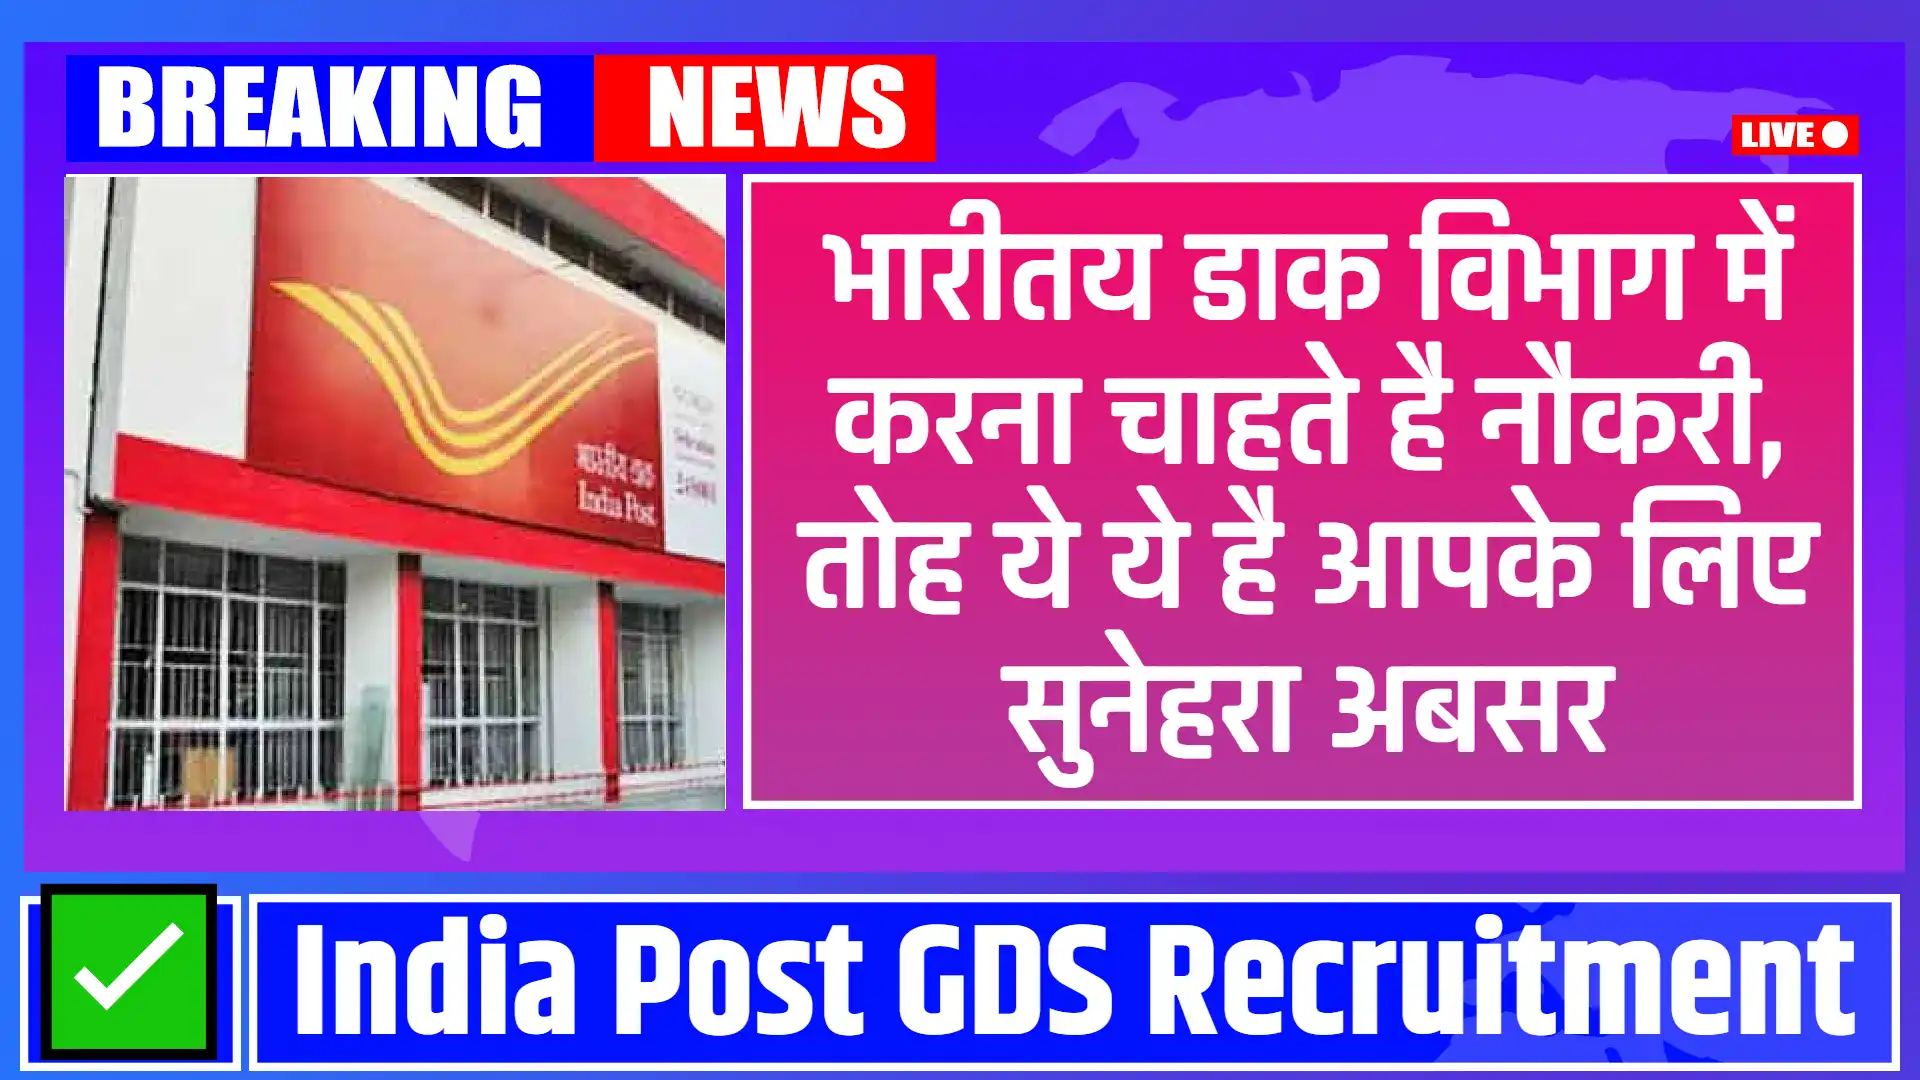 India Post GDS Recruitment 2024: भारत में डाक सेवाओं के क्षेत्र में सुनहरा अवसर, 44,000 से अधिक पदों के लिए आवेदन पत्र लिया जायेगा